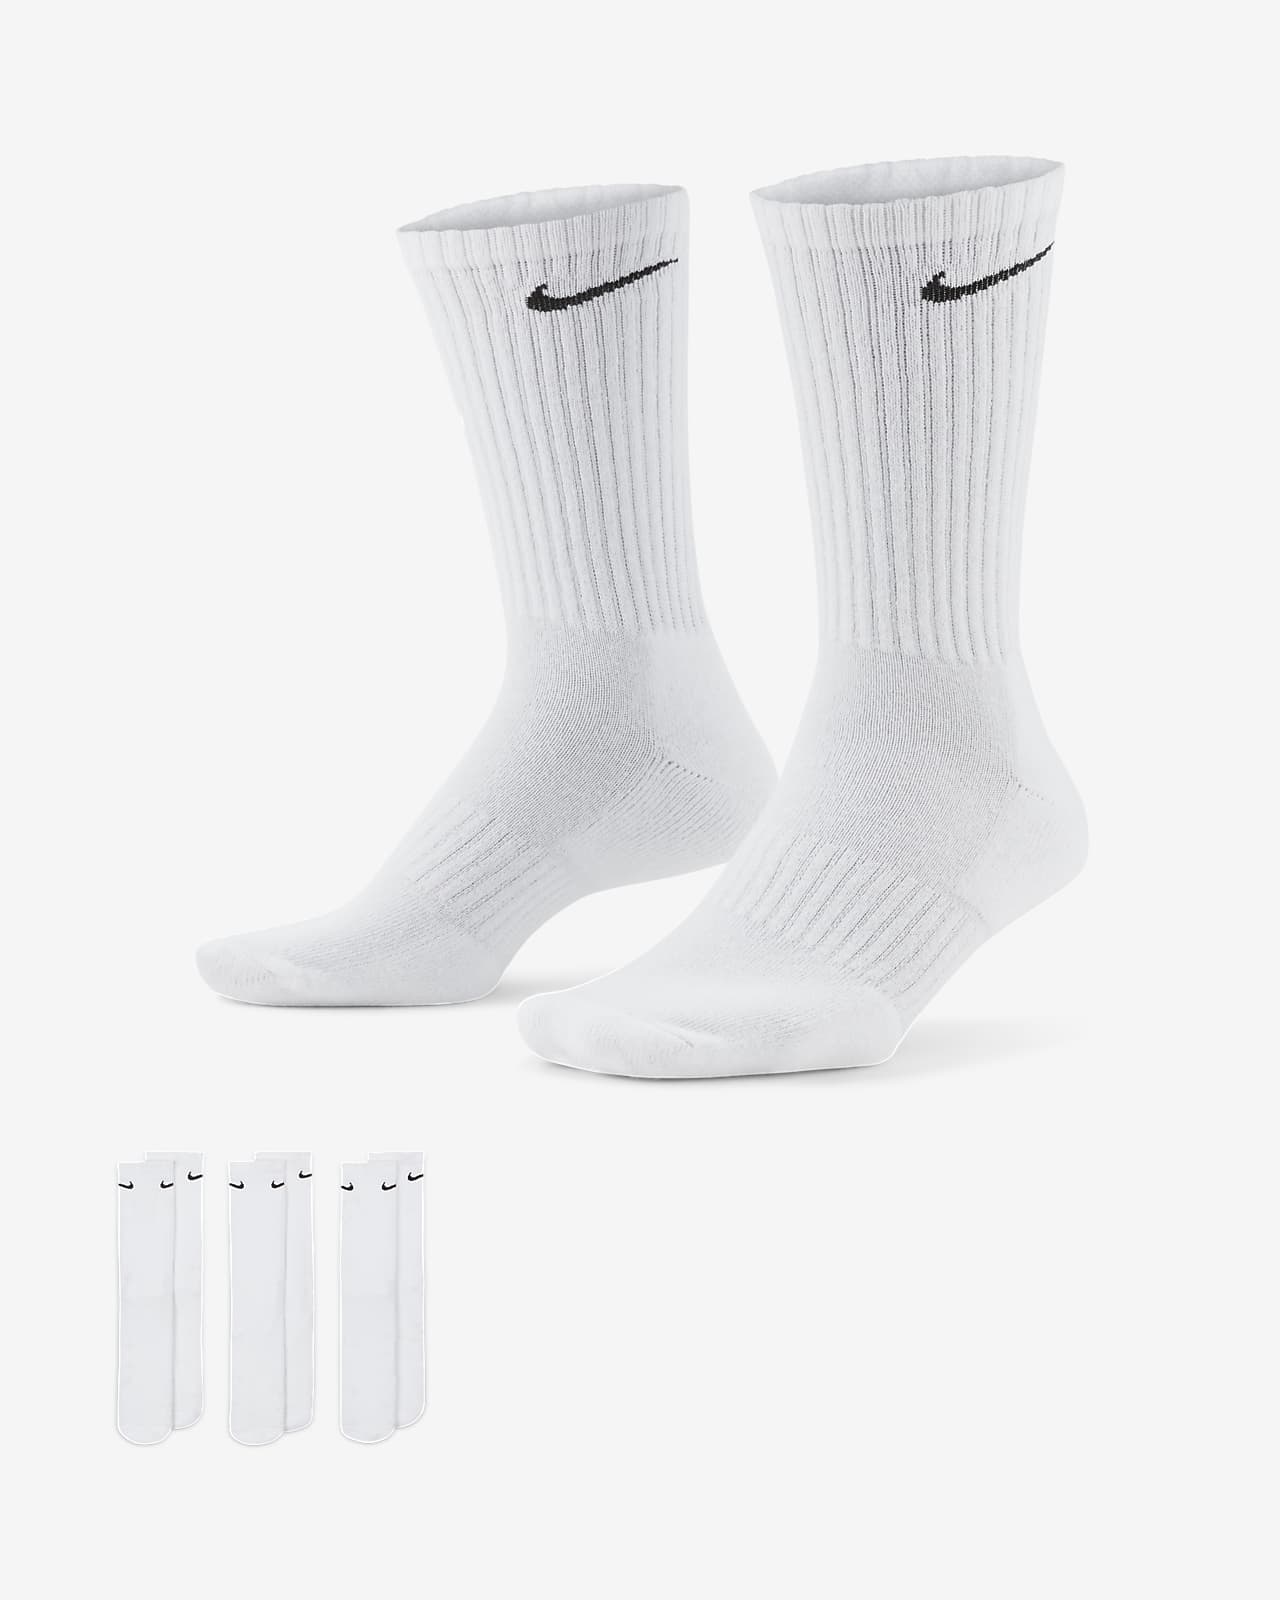 ถุงเท้าเทรนนิ่งข้อยาว Nike Everyday Cushioned (3 คู่) Nike TH